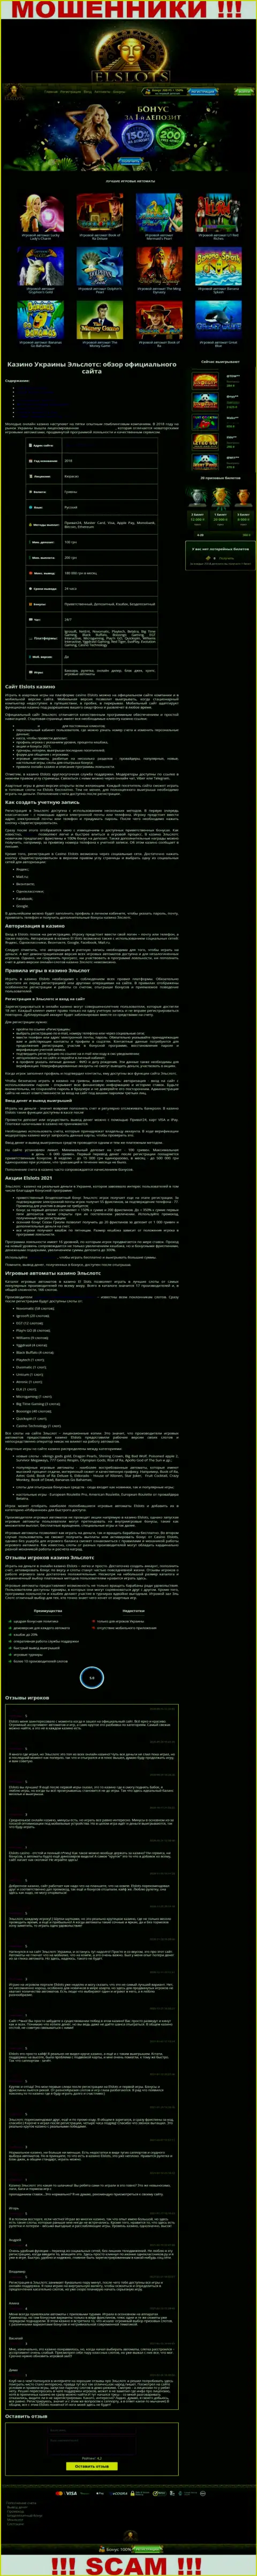 Вид официальной веб странички противозаконно действующей организации Ел Слотс